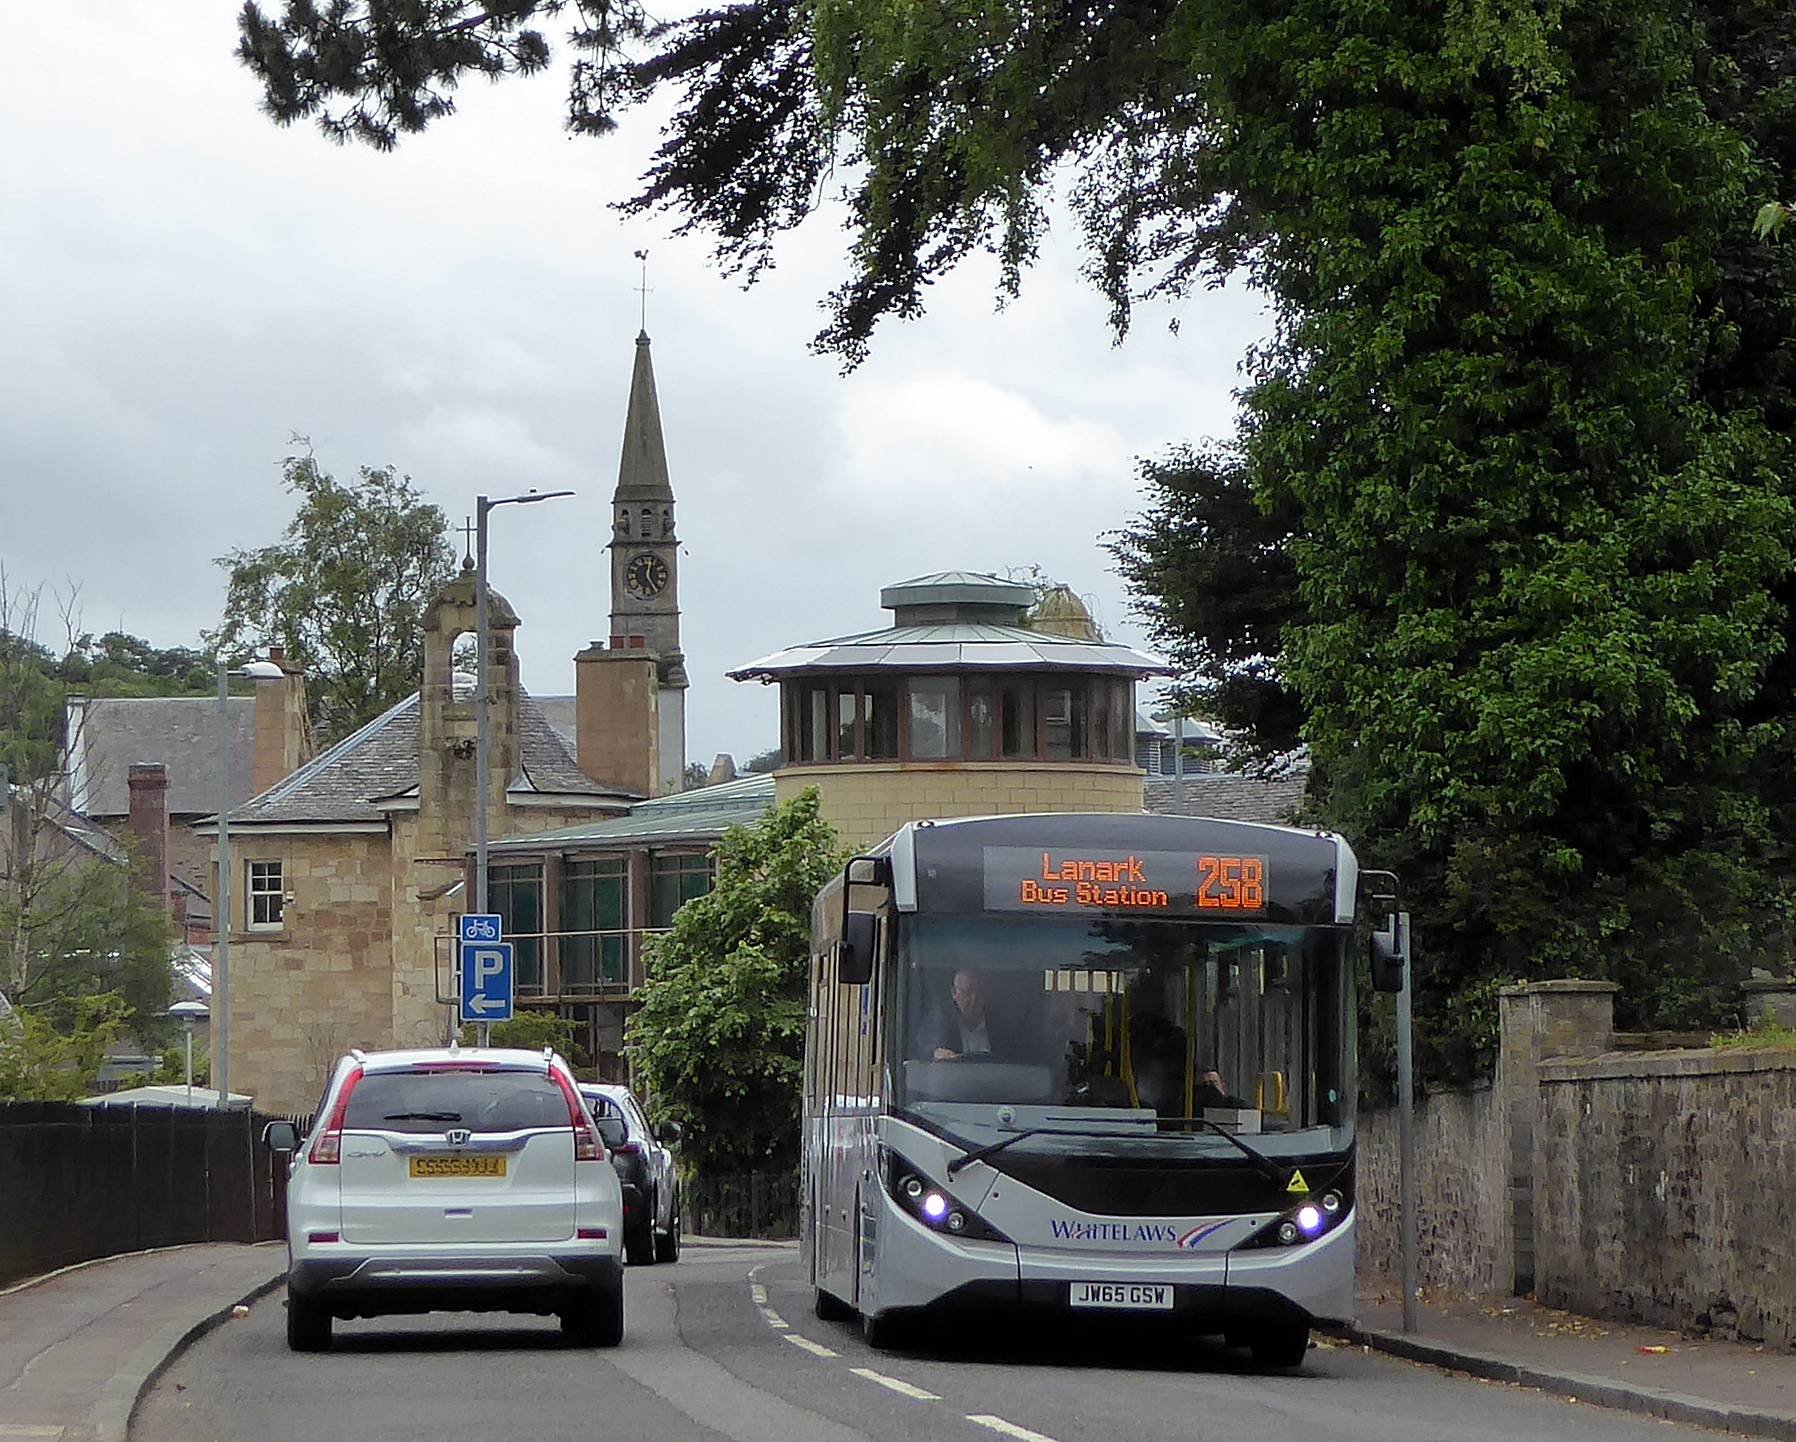 258 Lanark bus in Abbeygreen, Lesmahagow